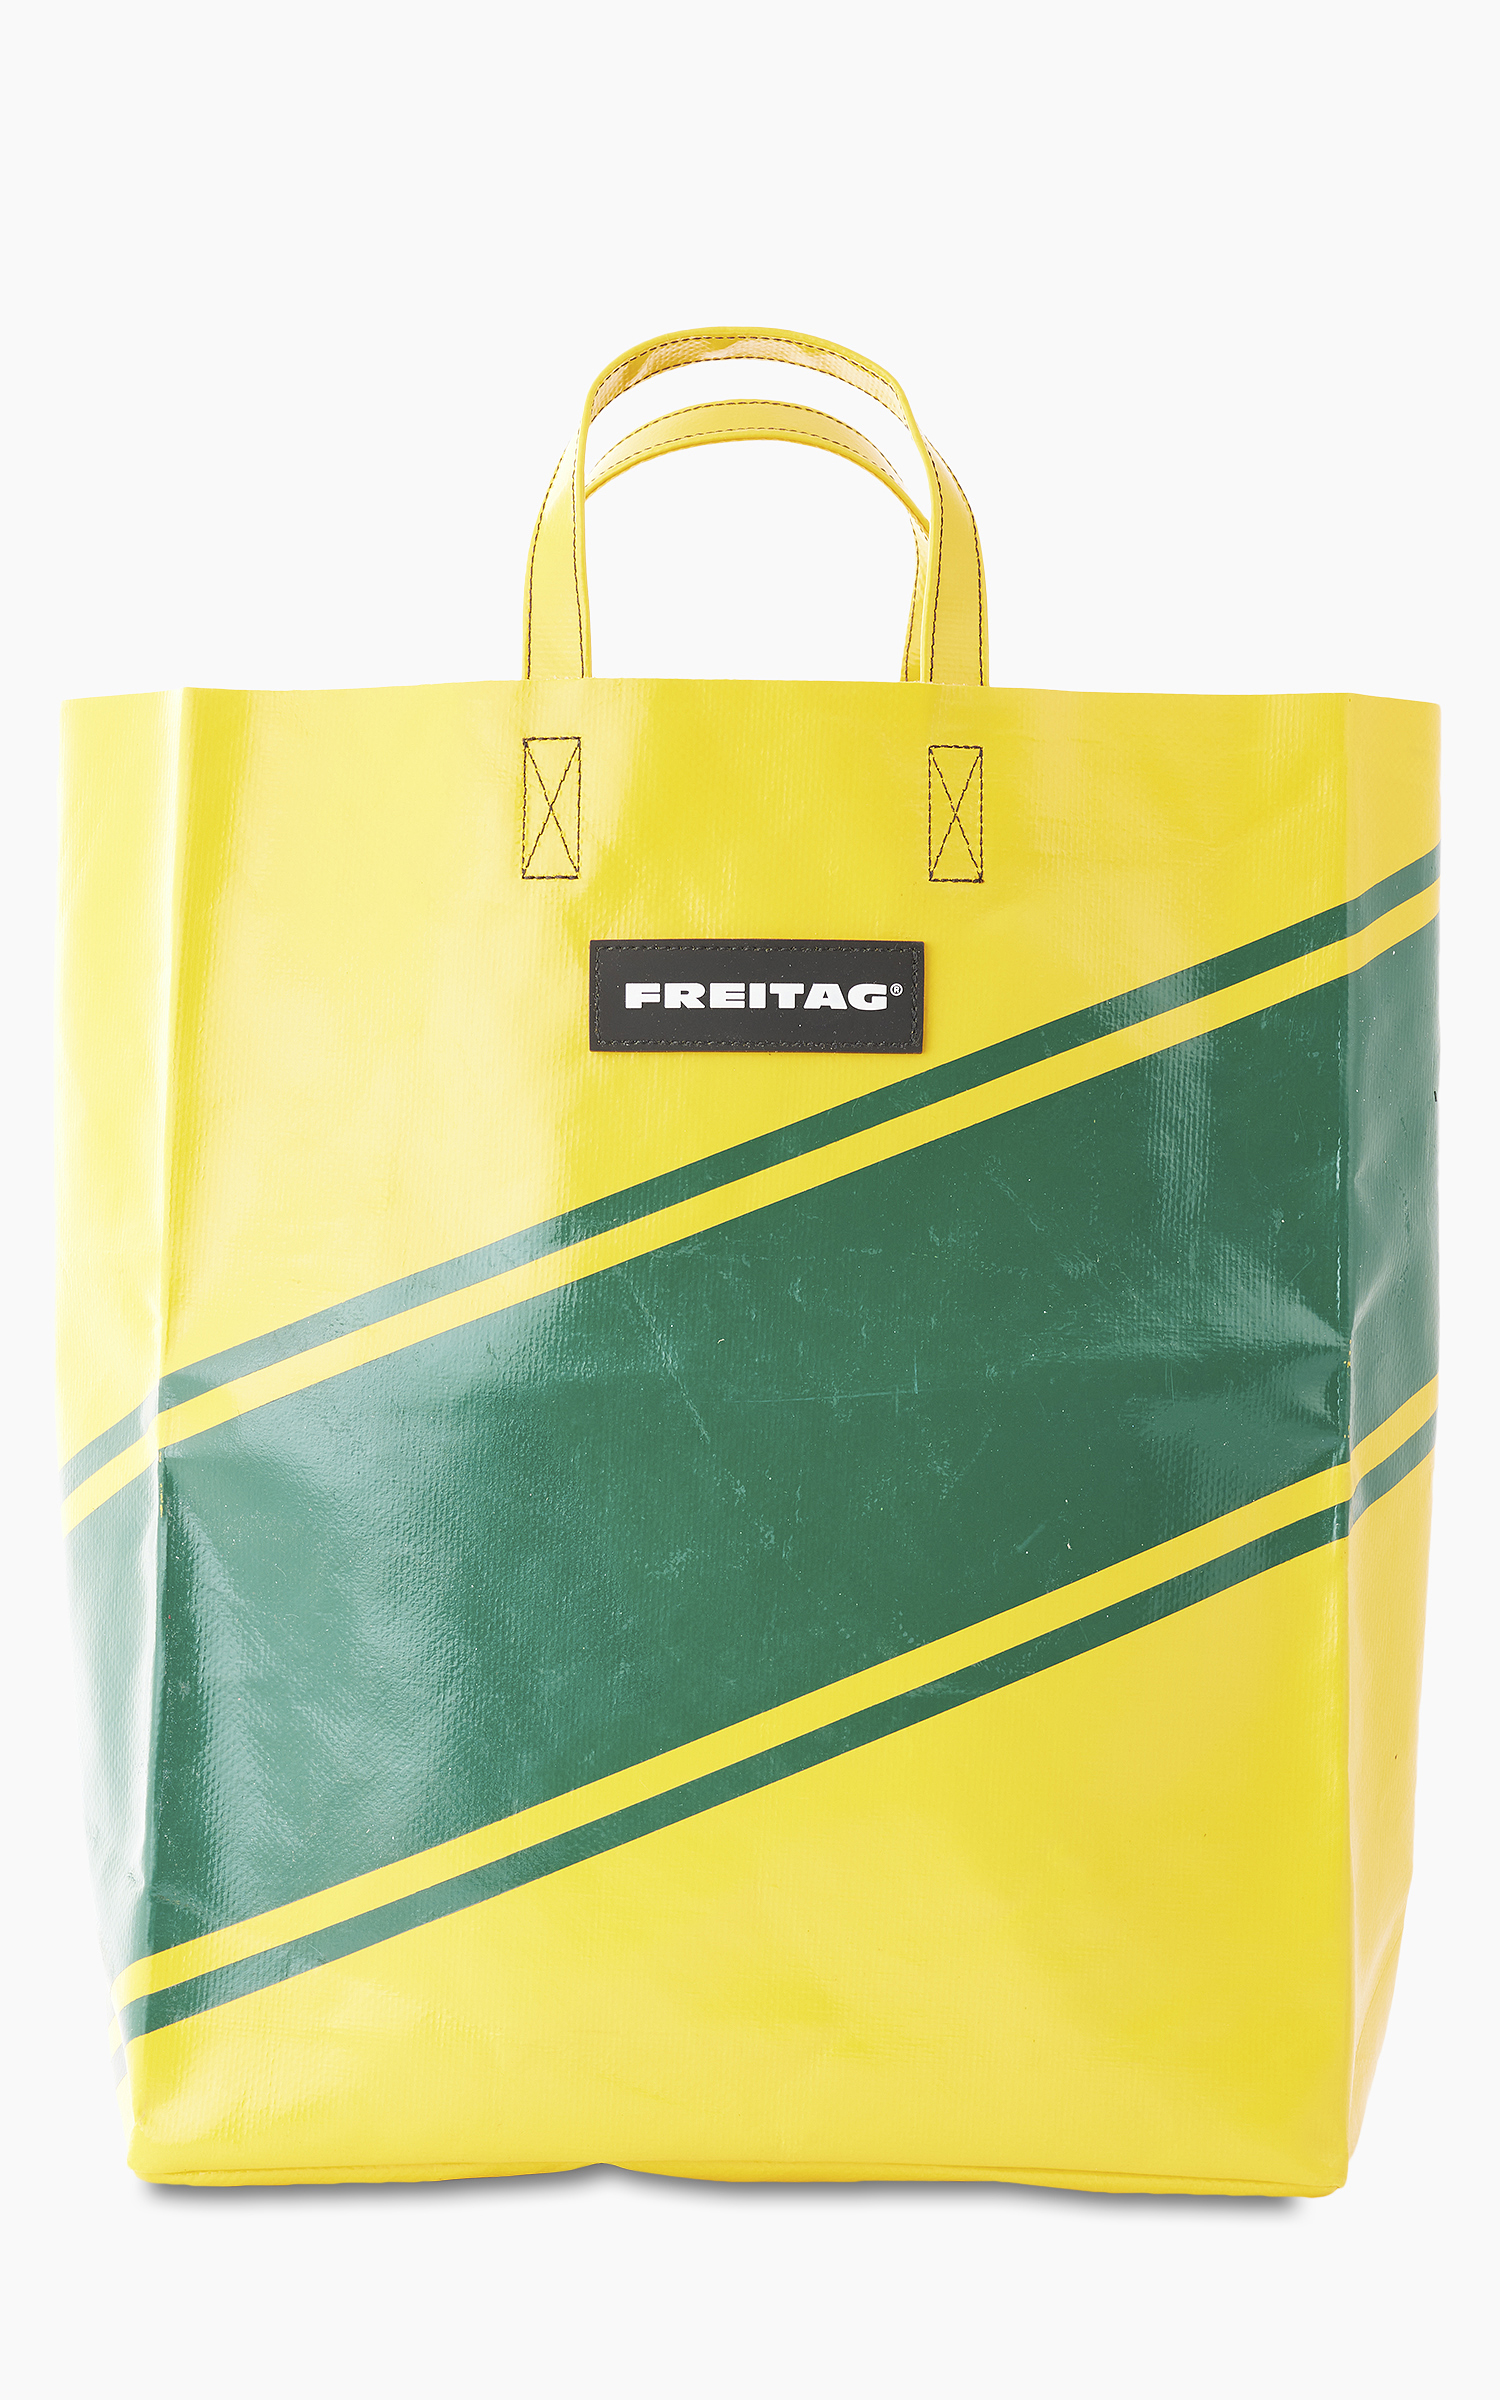 Freitag F52 Miami Vice Shopping Bag Yellow 15-1